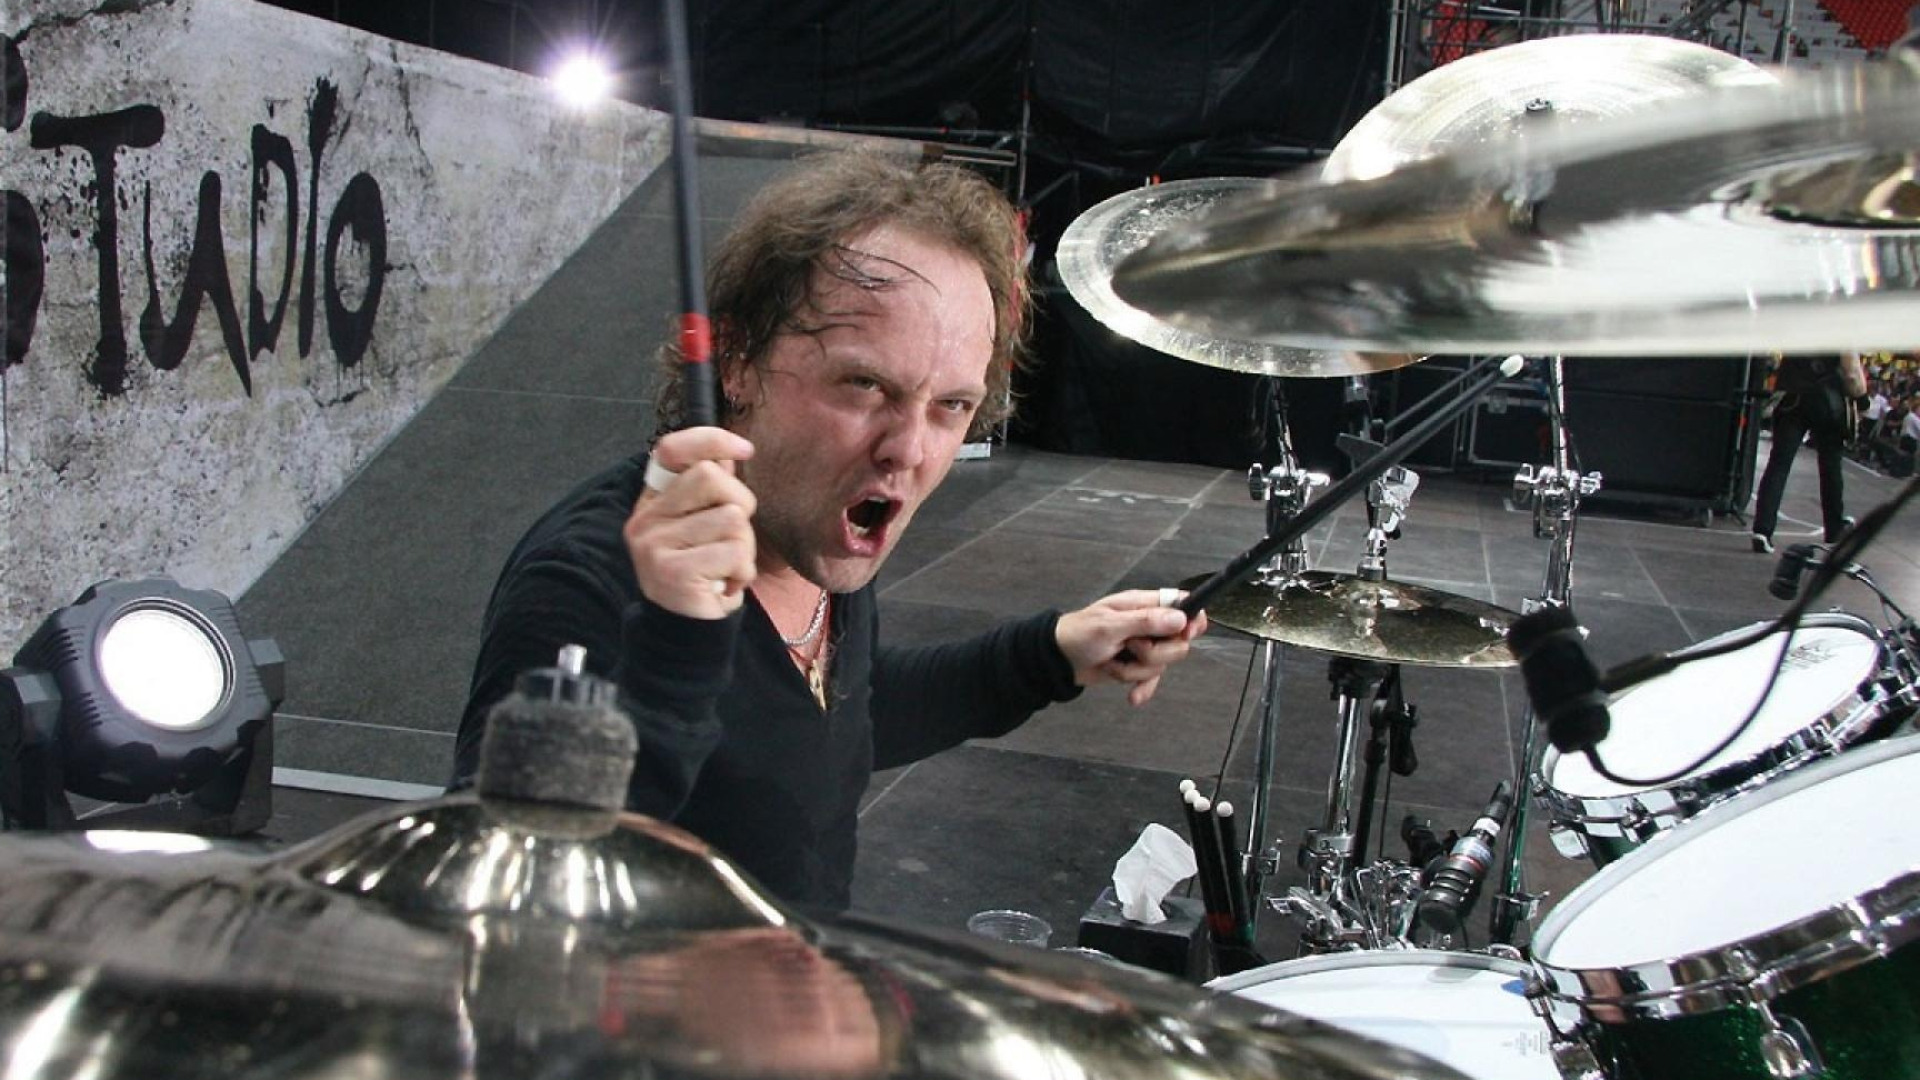 Lars Ulrich, Rockstar wallpapers, Metallica drummer, Rock legend, 1920x1080 Full HD Desktop